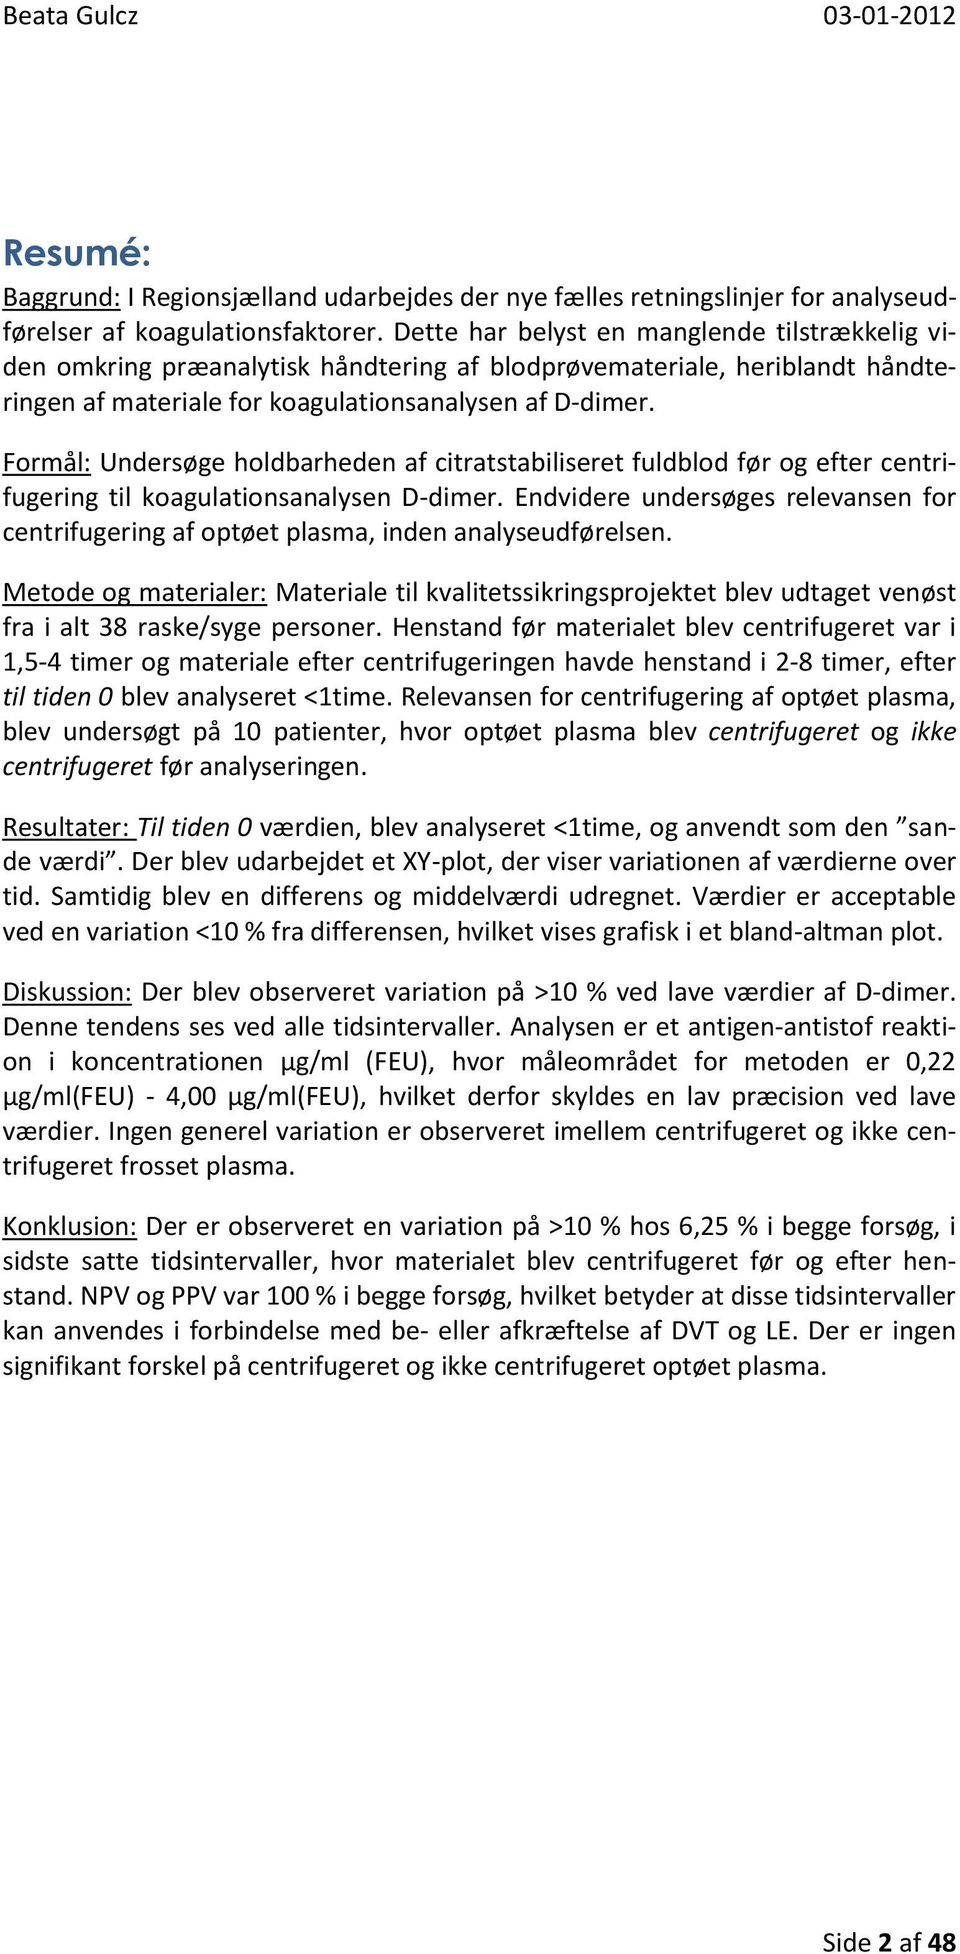 Holdbarheden for citratstabiliseret fuldblod, til D-dimer analyser udført  på STA-R Liatest. - PDF Gratis download